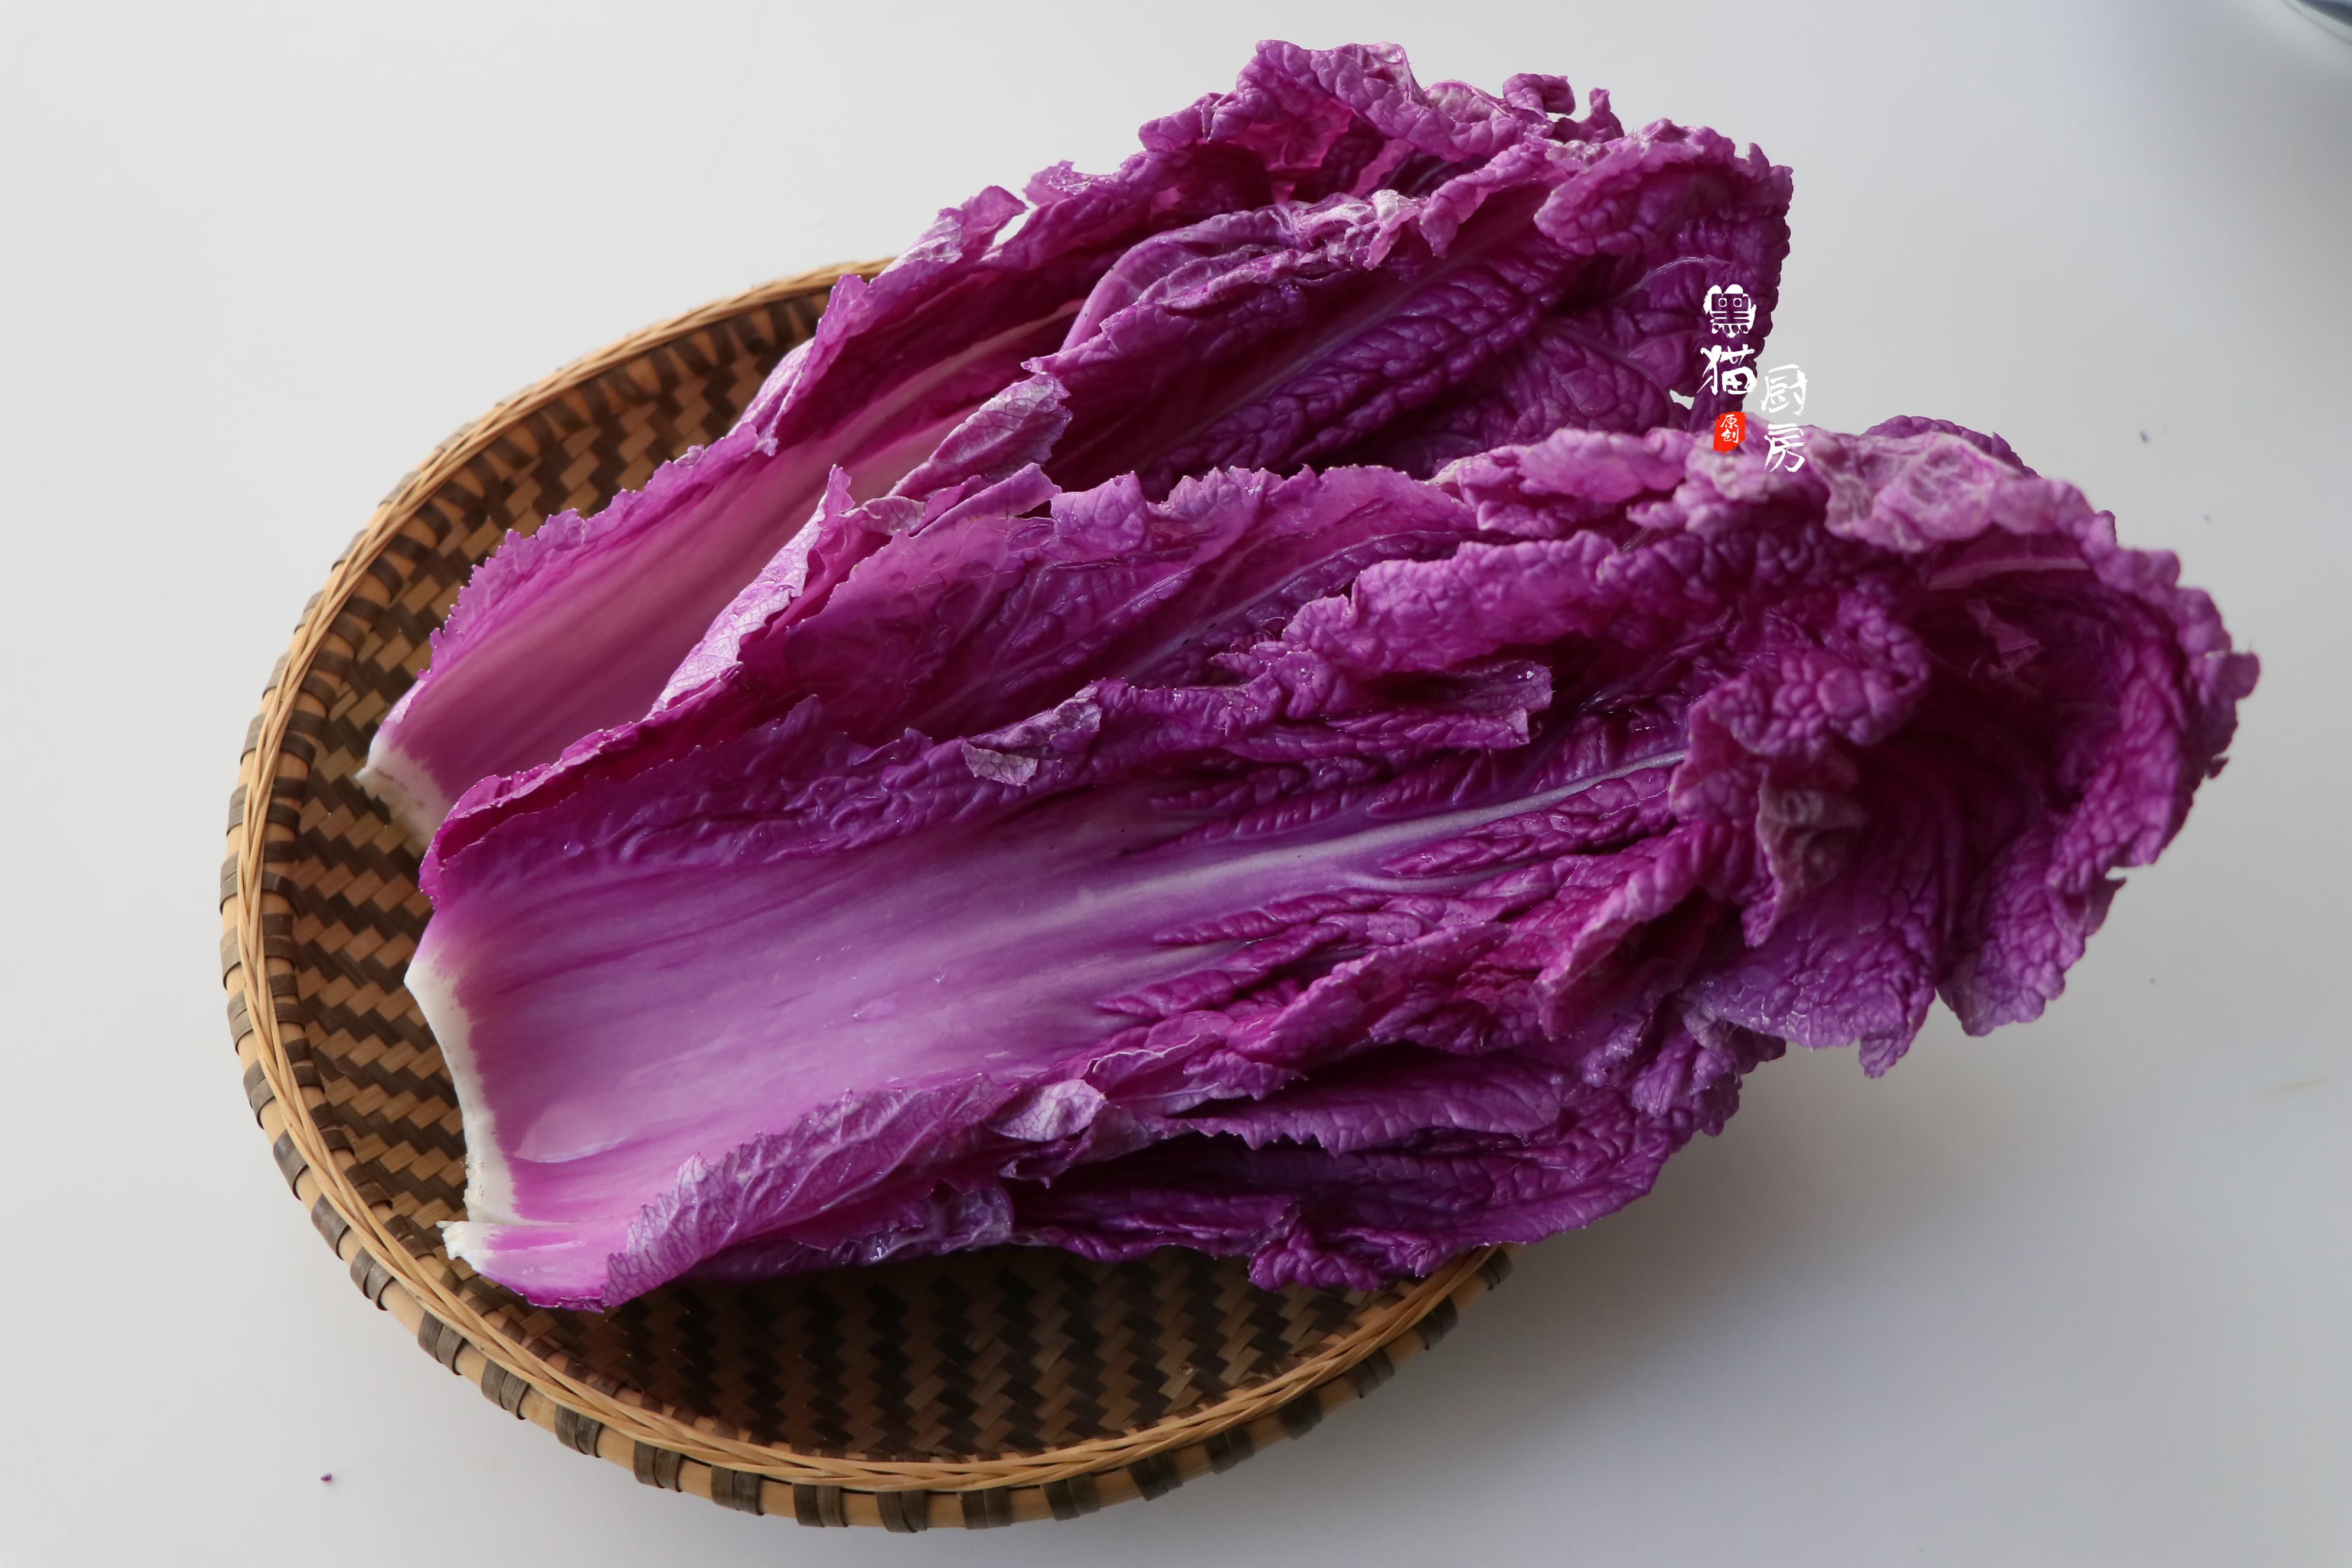 食材:紫白菜一颗,大葱段2段,花椒少许,小米辣2个,蒜末适量,盐,油泼